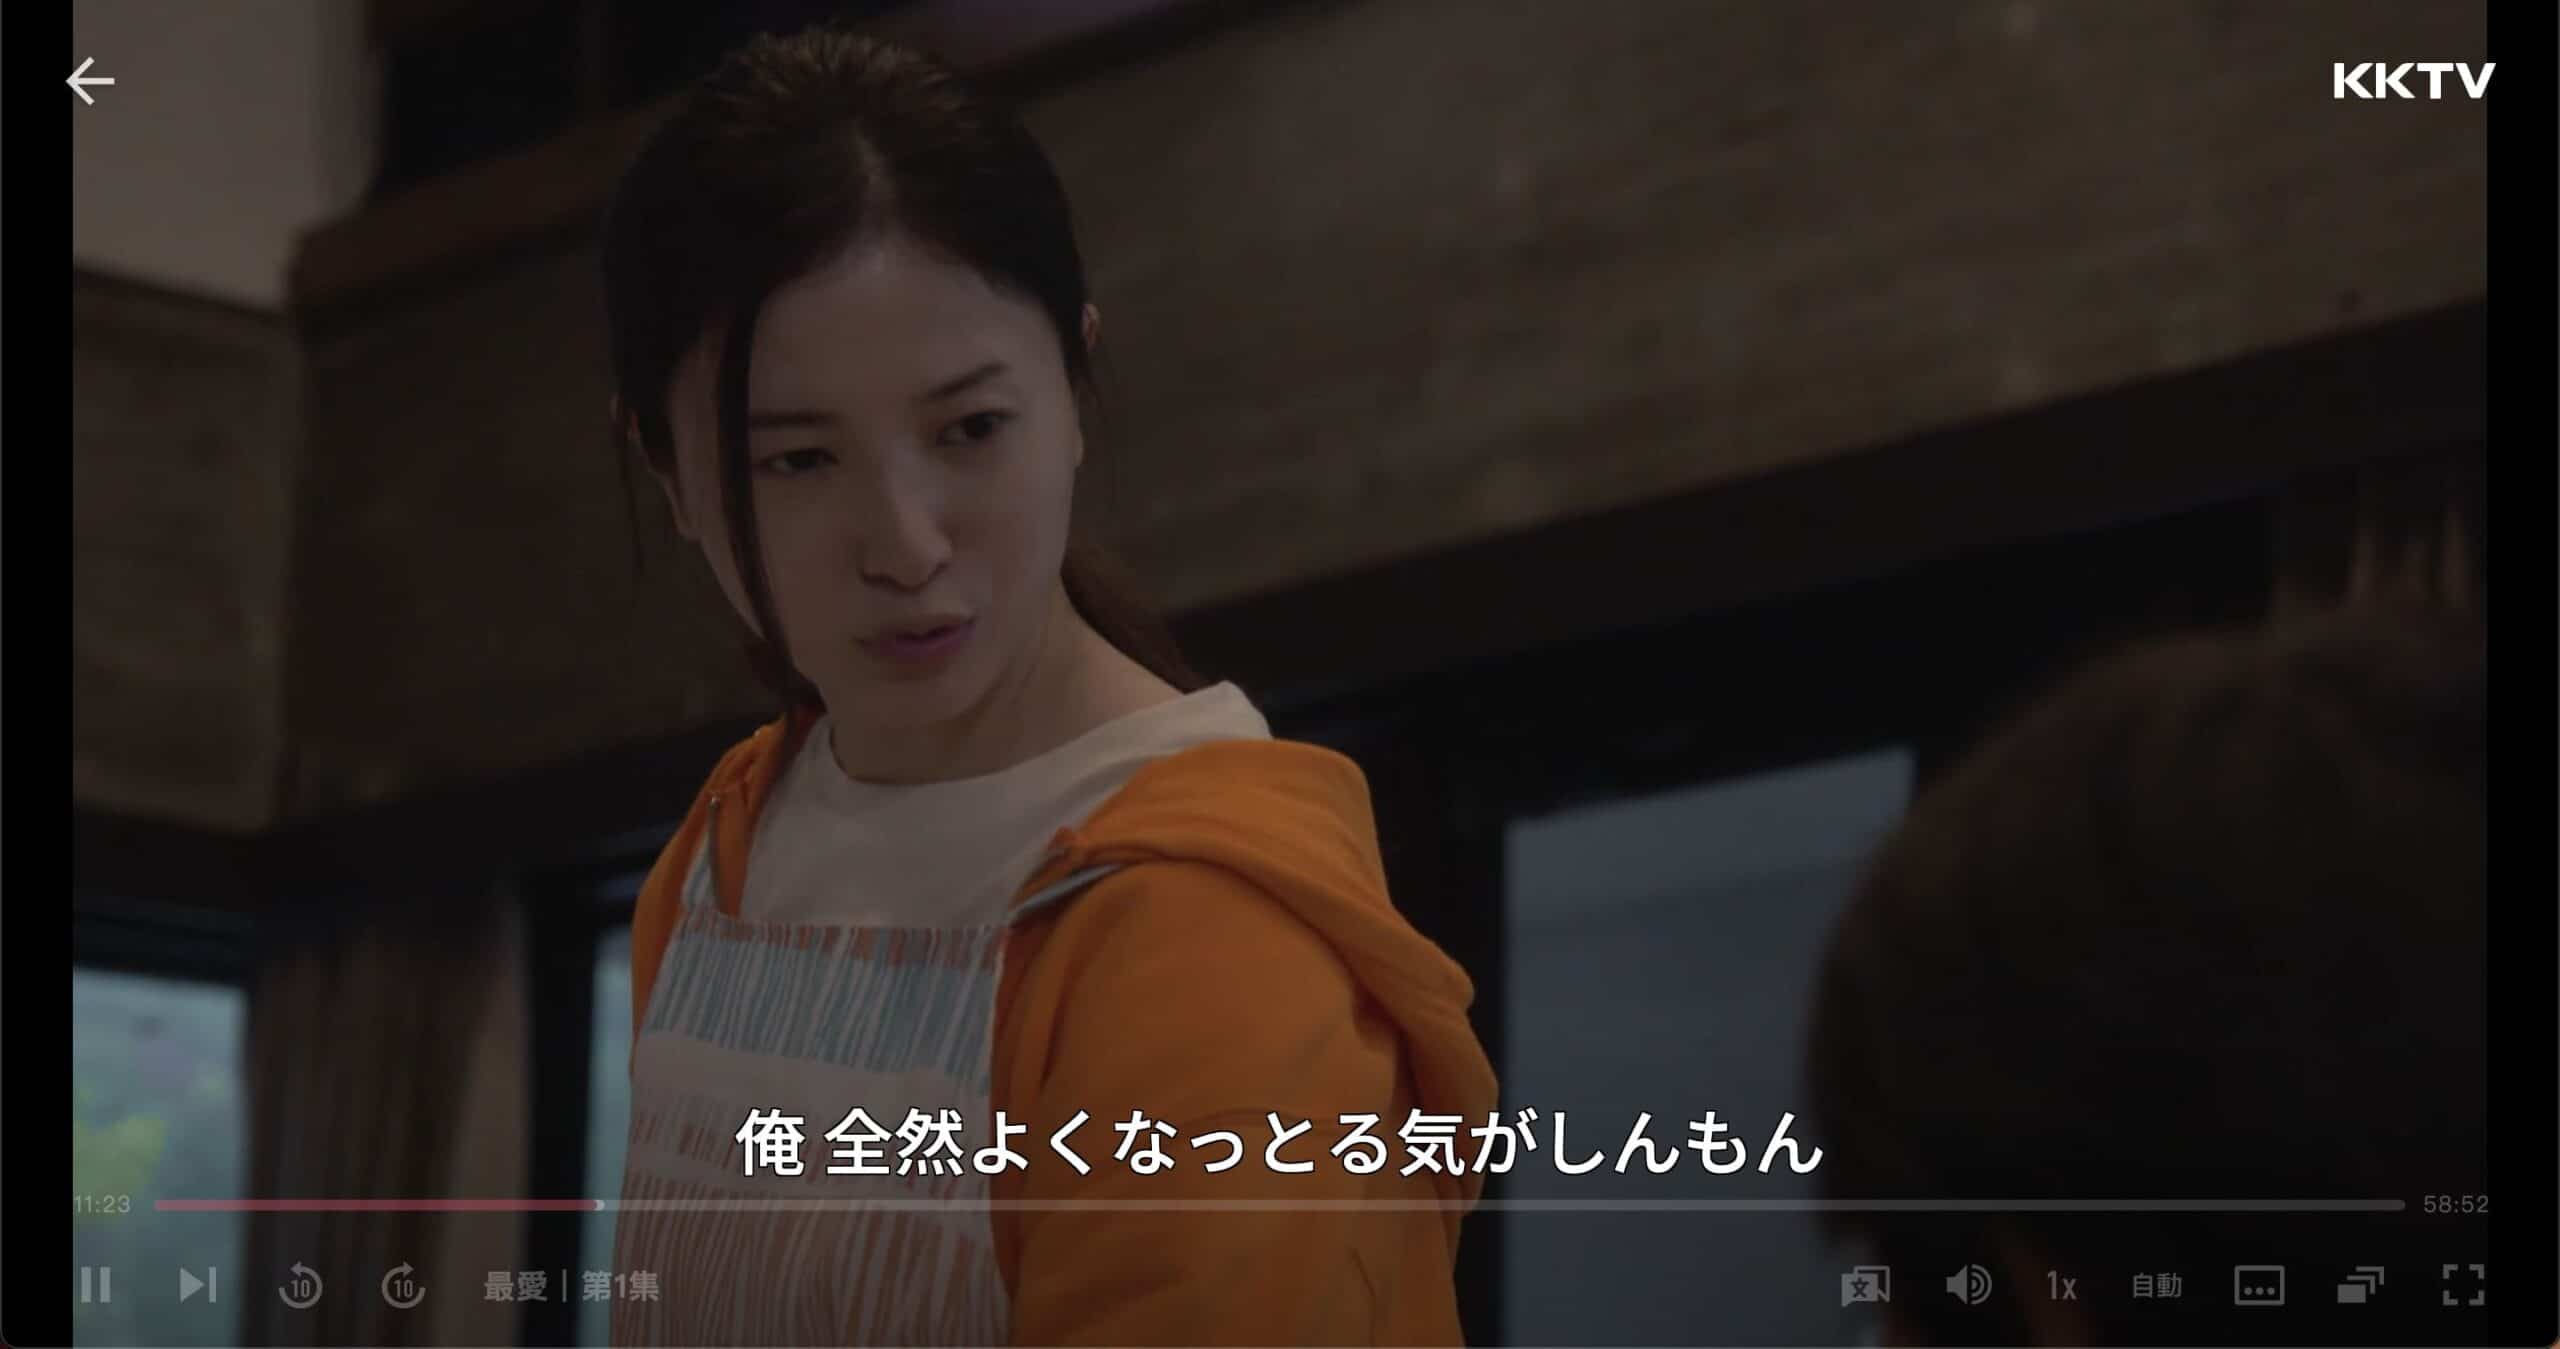 KKTVは日本の字幕をサポートしています